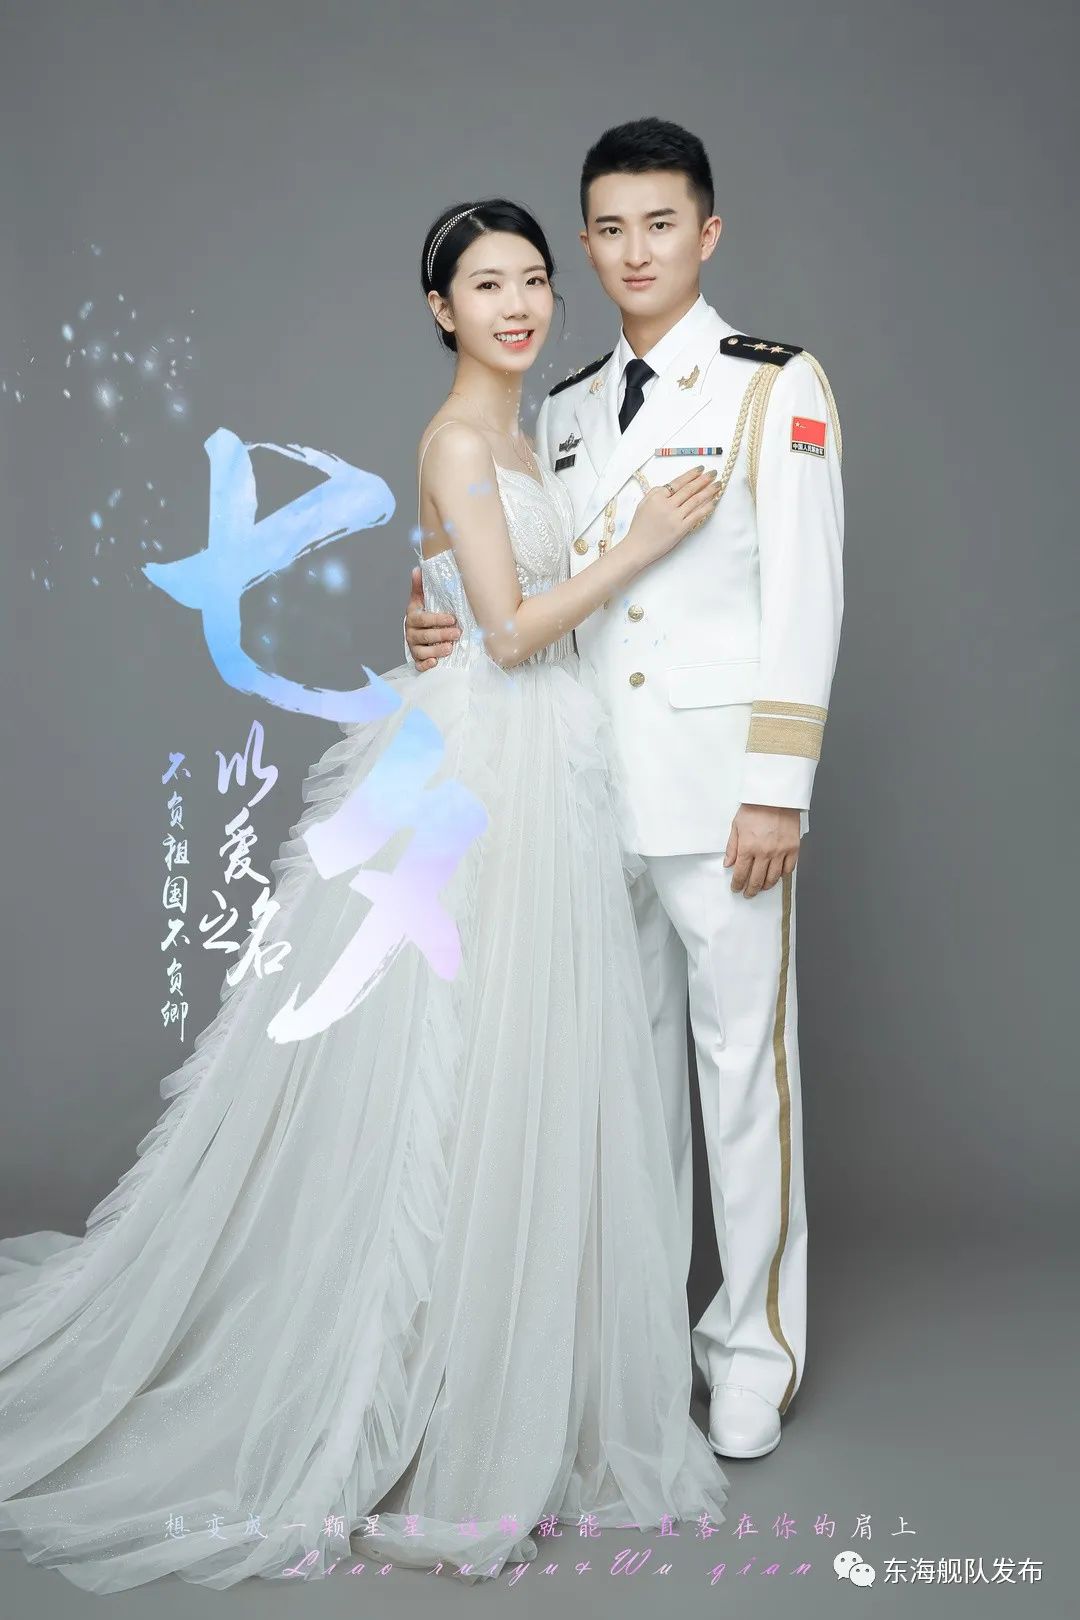 前方高甜！婚纱与军装的“硬核”浪漫 - 中国军网